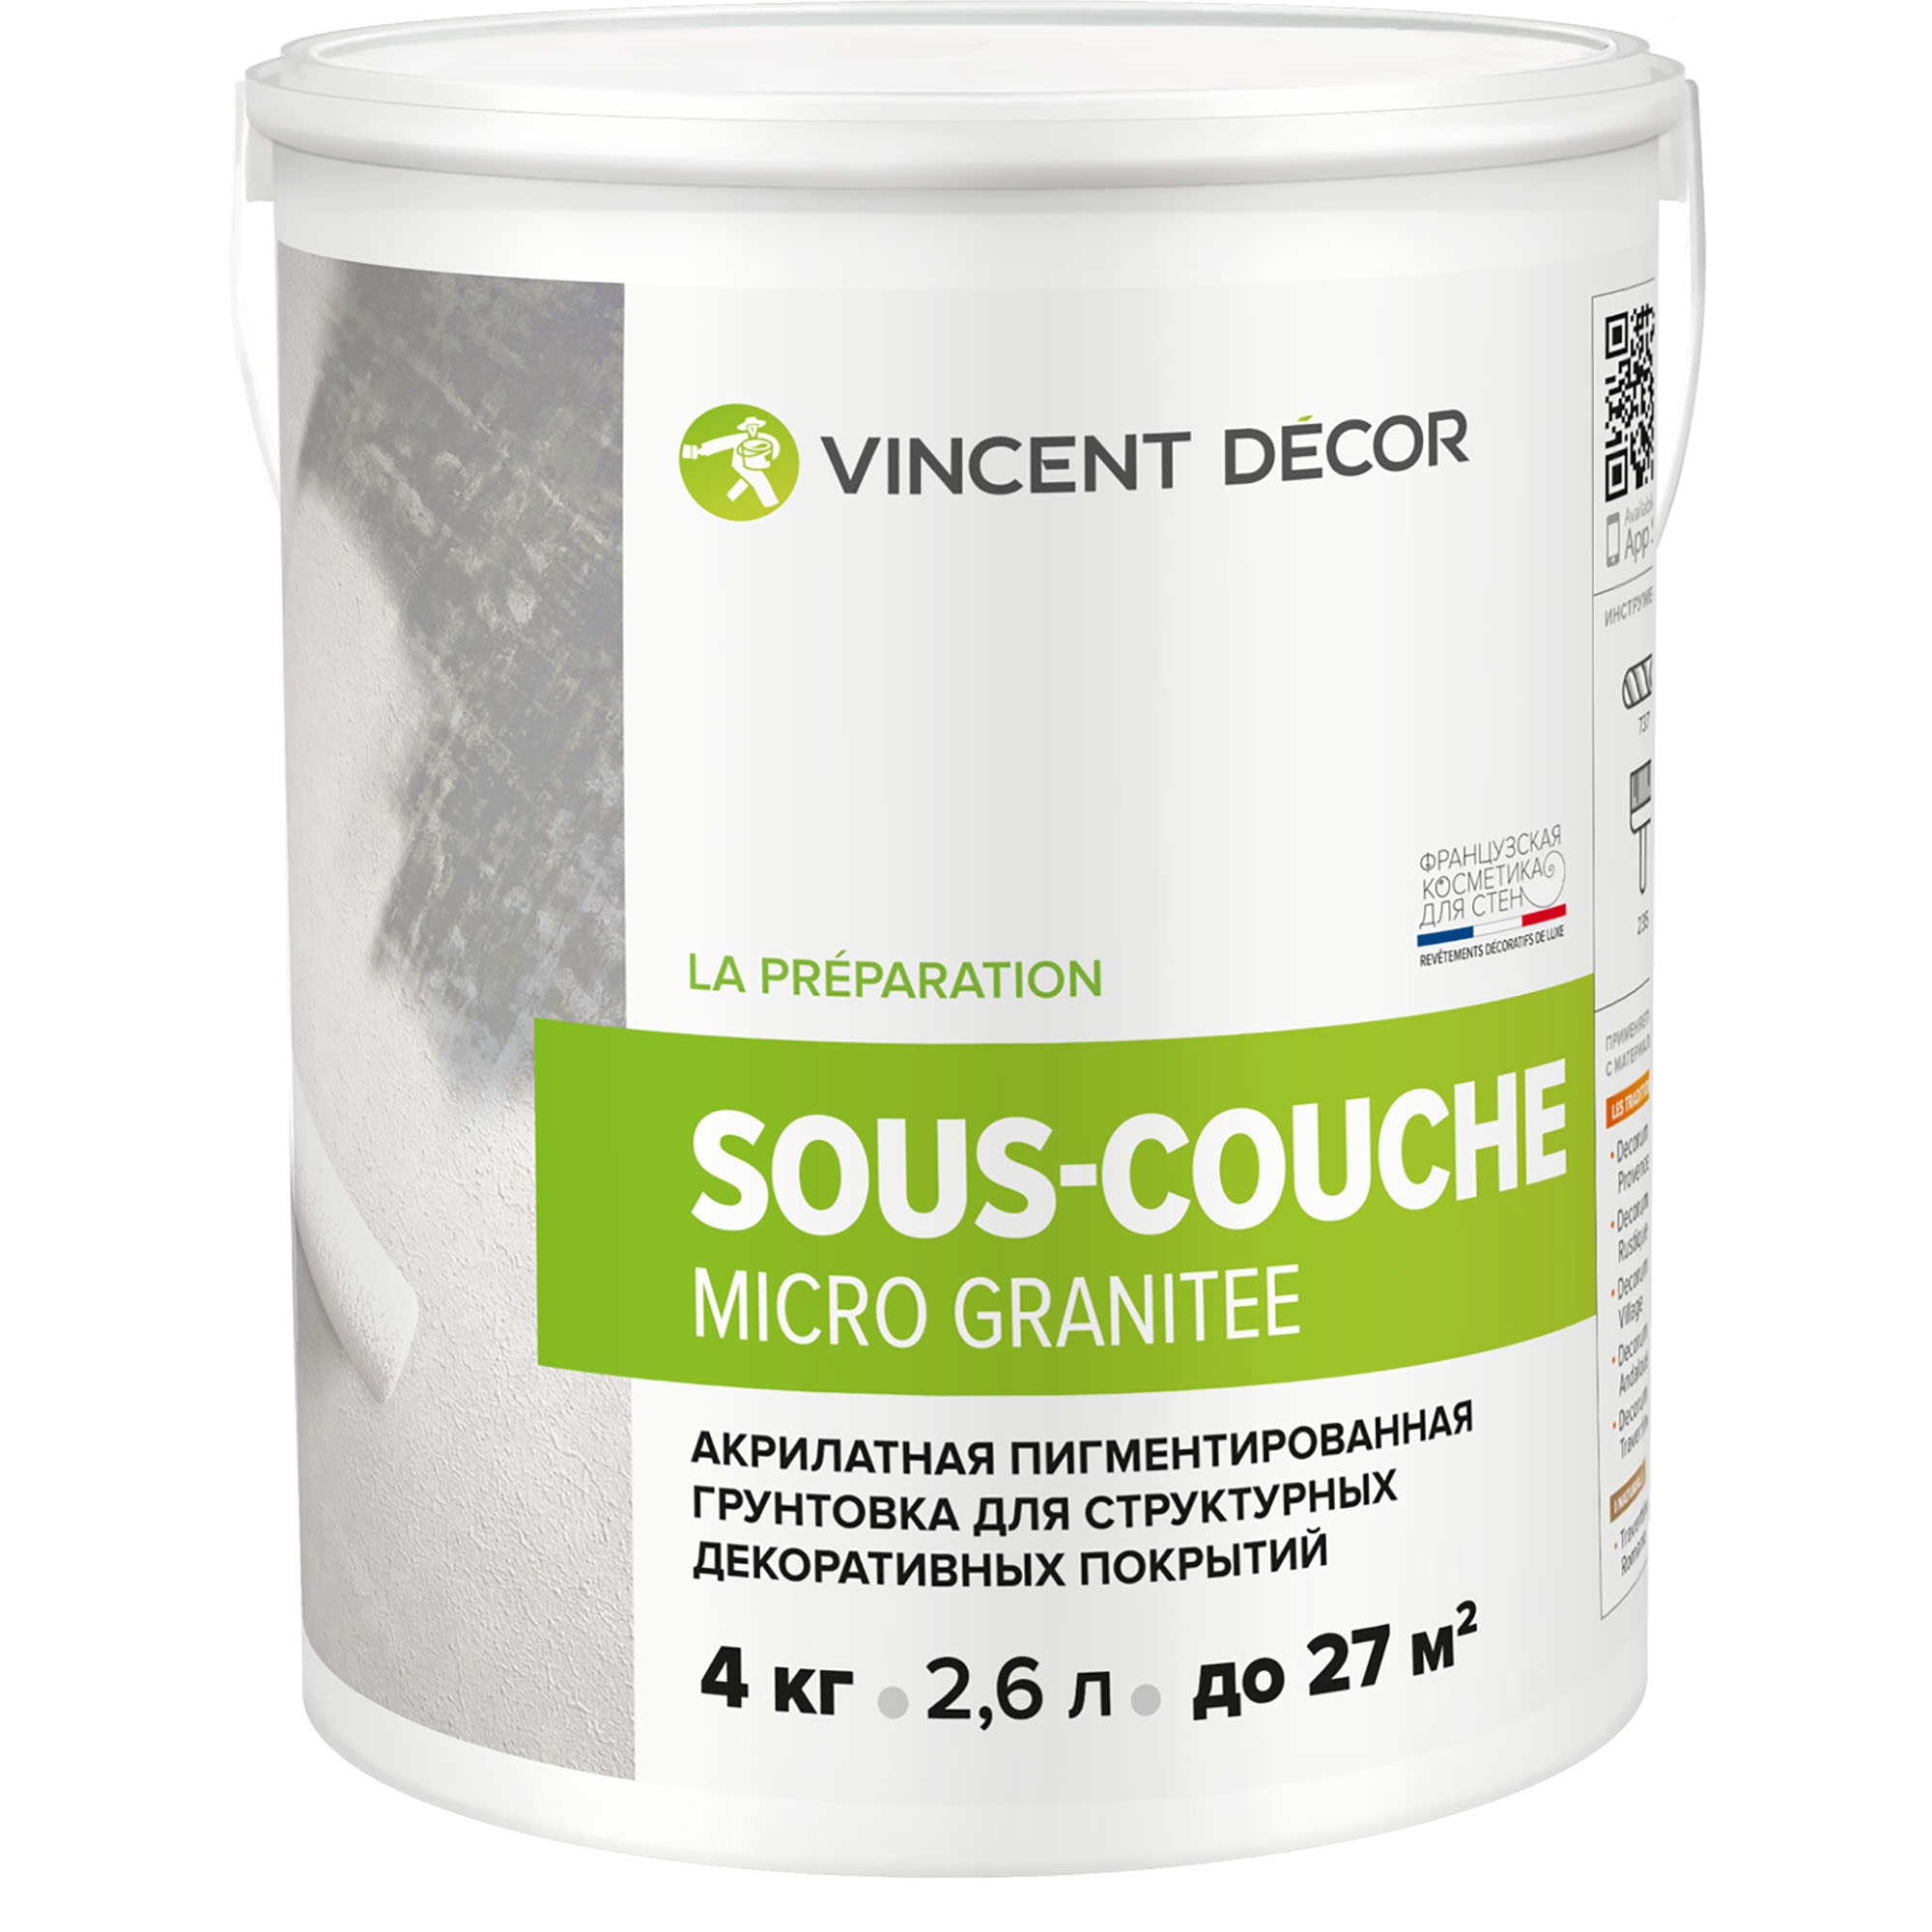 Грунтовка для структурных декоративных покрытий Vincent Decor Sous-Couсhe microgranite 4 кг грунтовка изольту 0 48 кг vincent